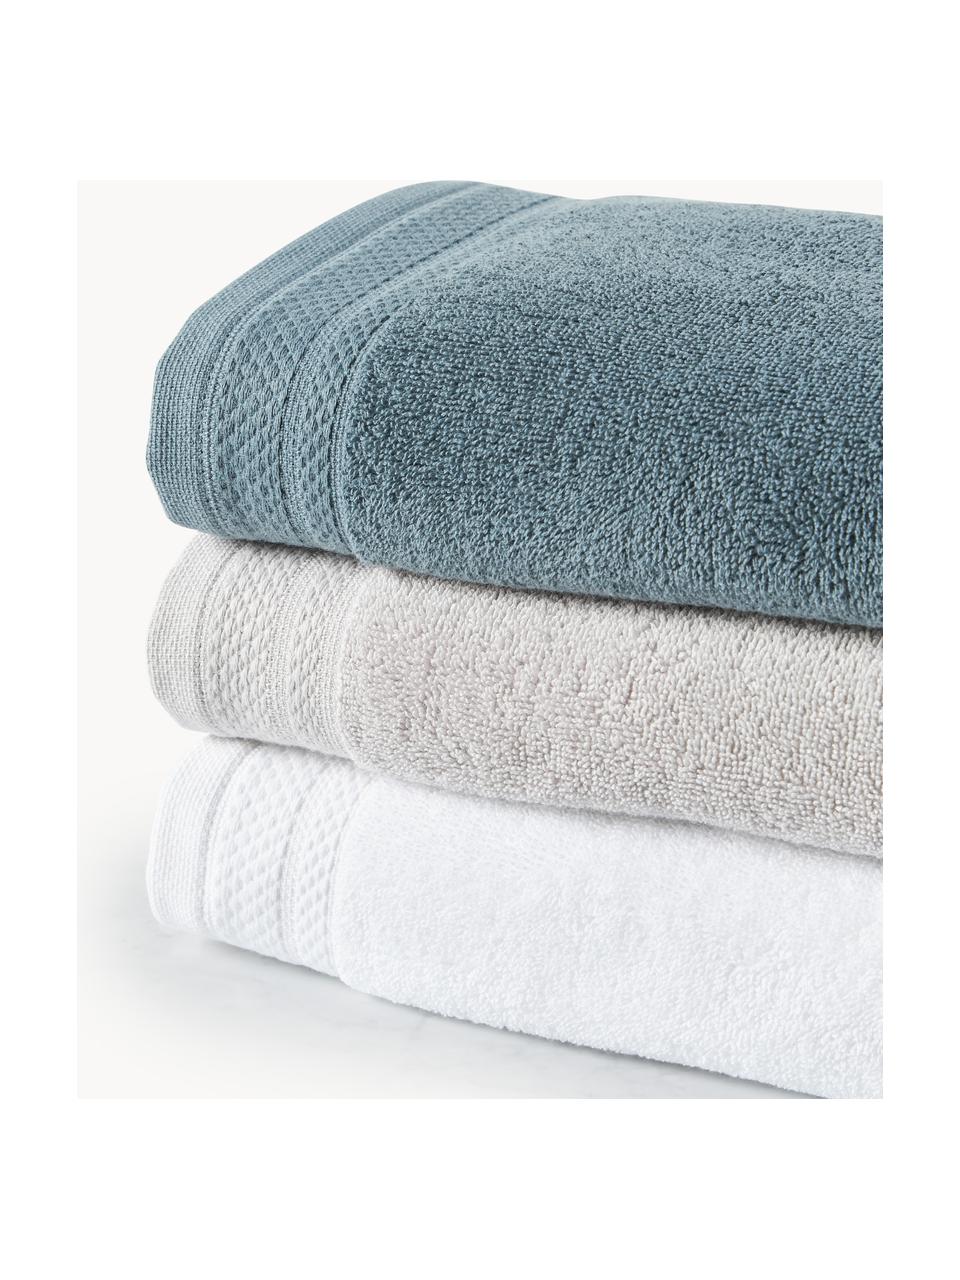 Set de toallas de algodón ecológico Premium, tamaños diferentes, 100% algodón ecológico con certificado GOTS (por GCL International, GCL-300517)
Gramaje superior 600 g/m², Blanco, Set de 4 (toallas lavabo y toallas ducha)